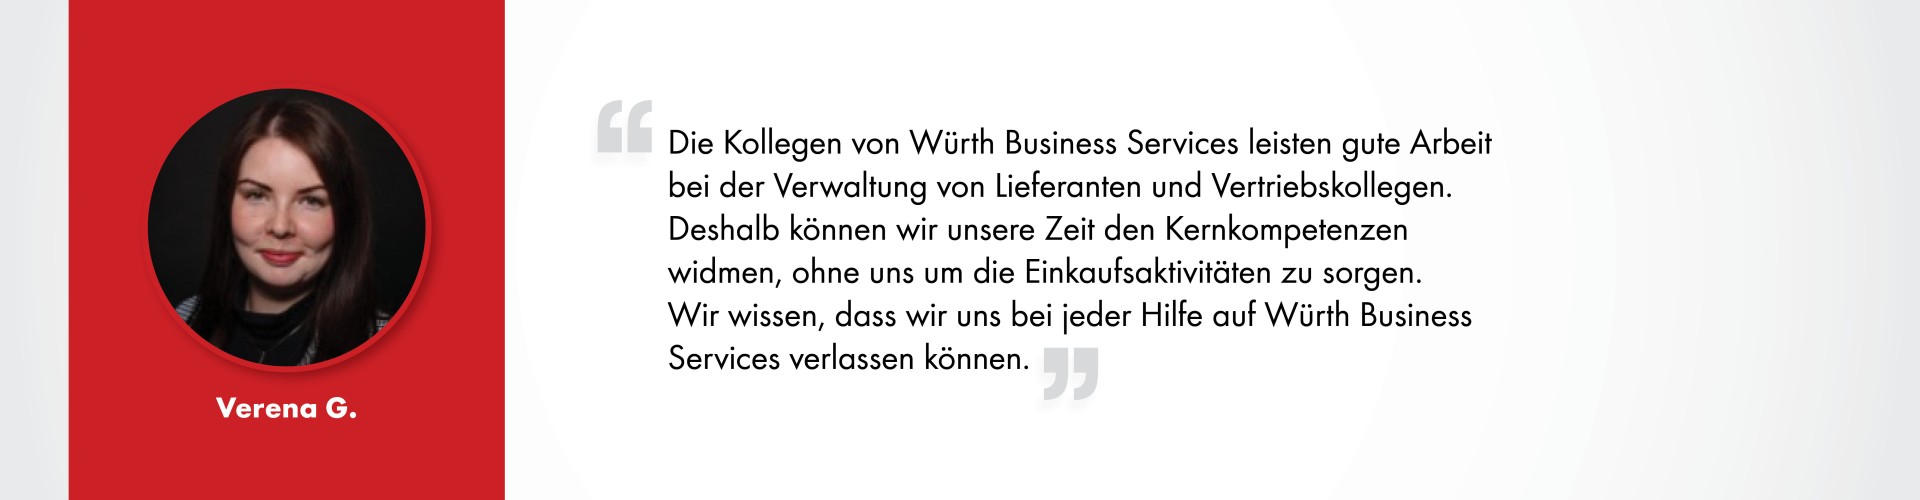 Verna G._Würth Business Services_Kundenstimmen